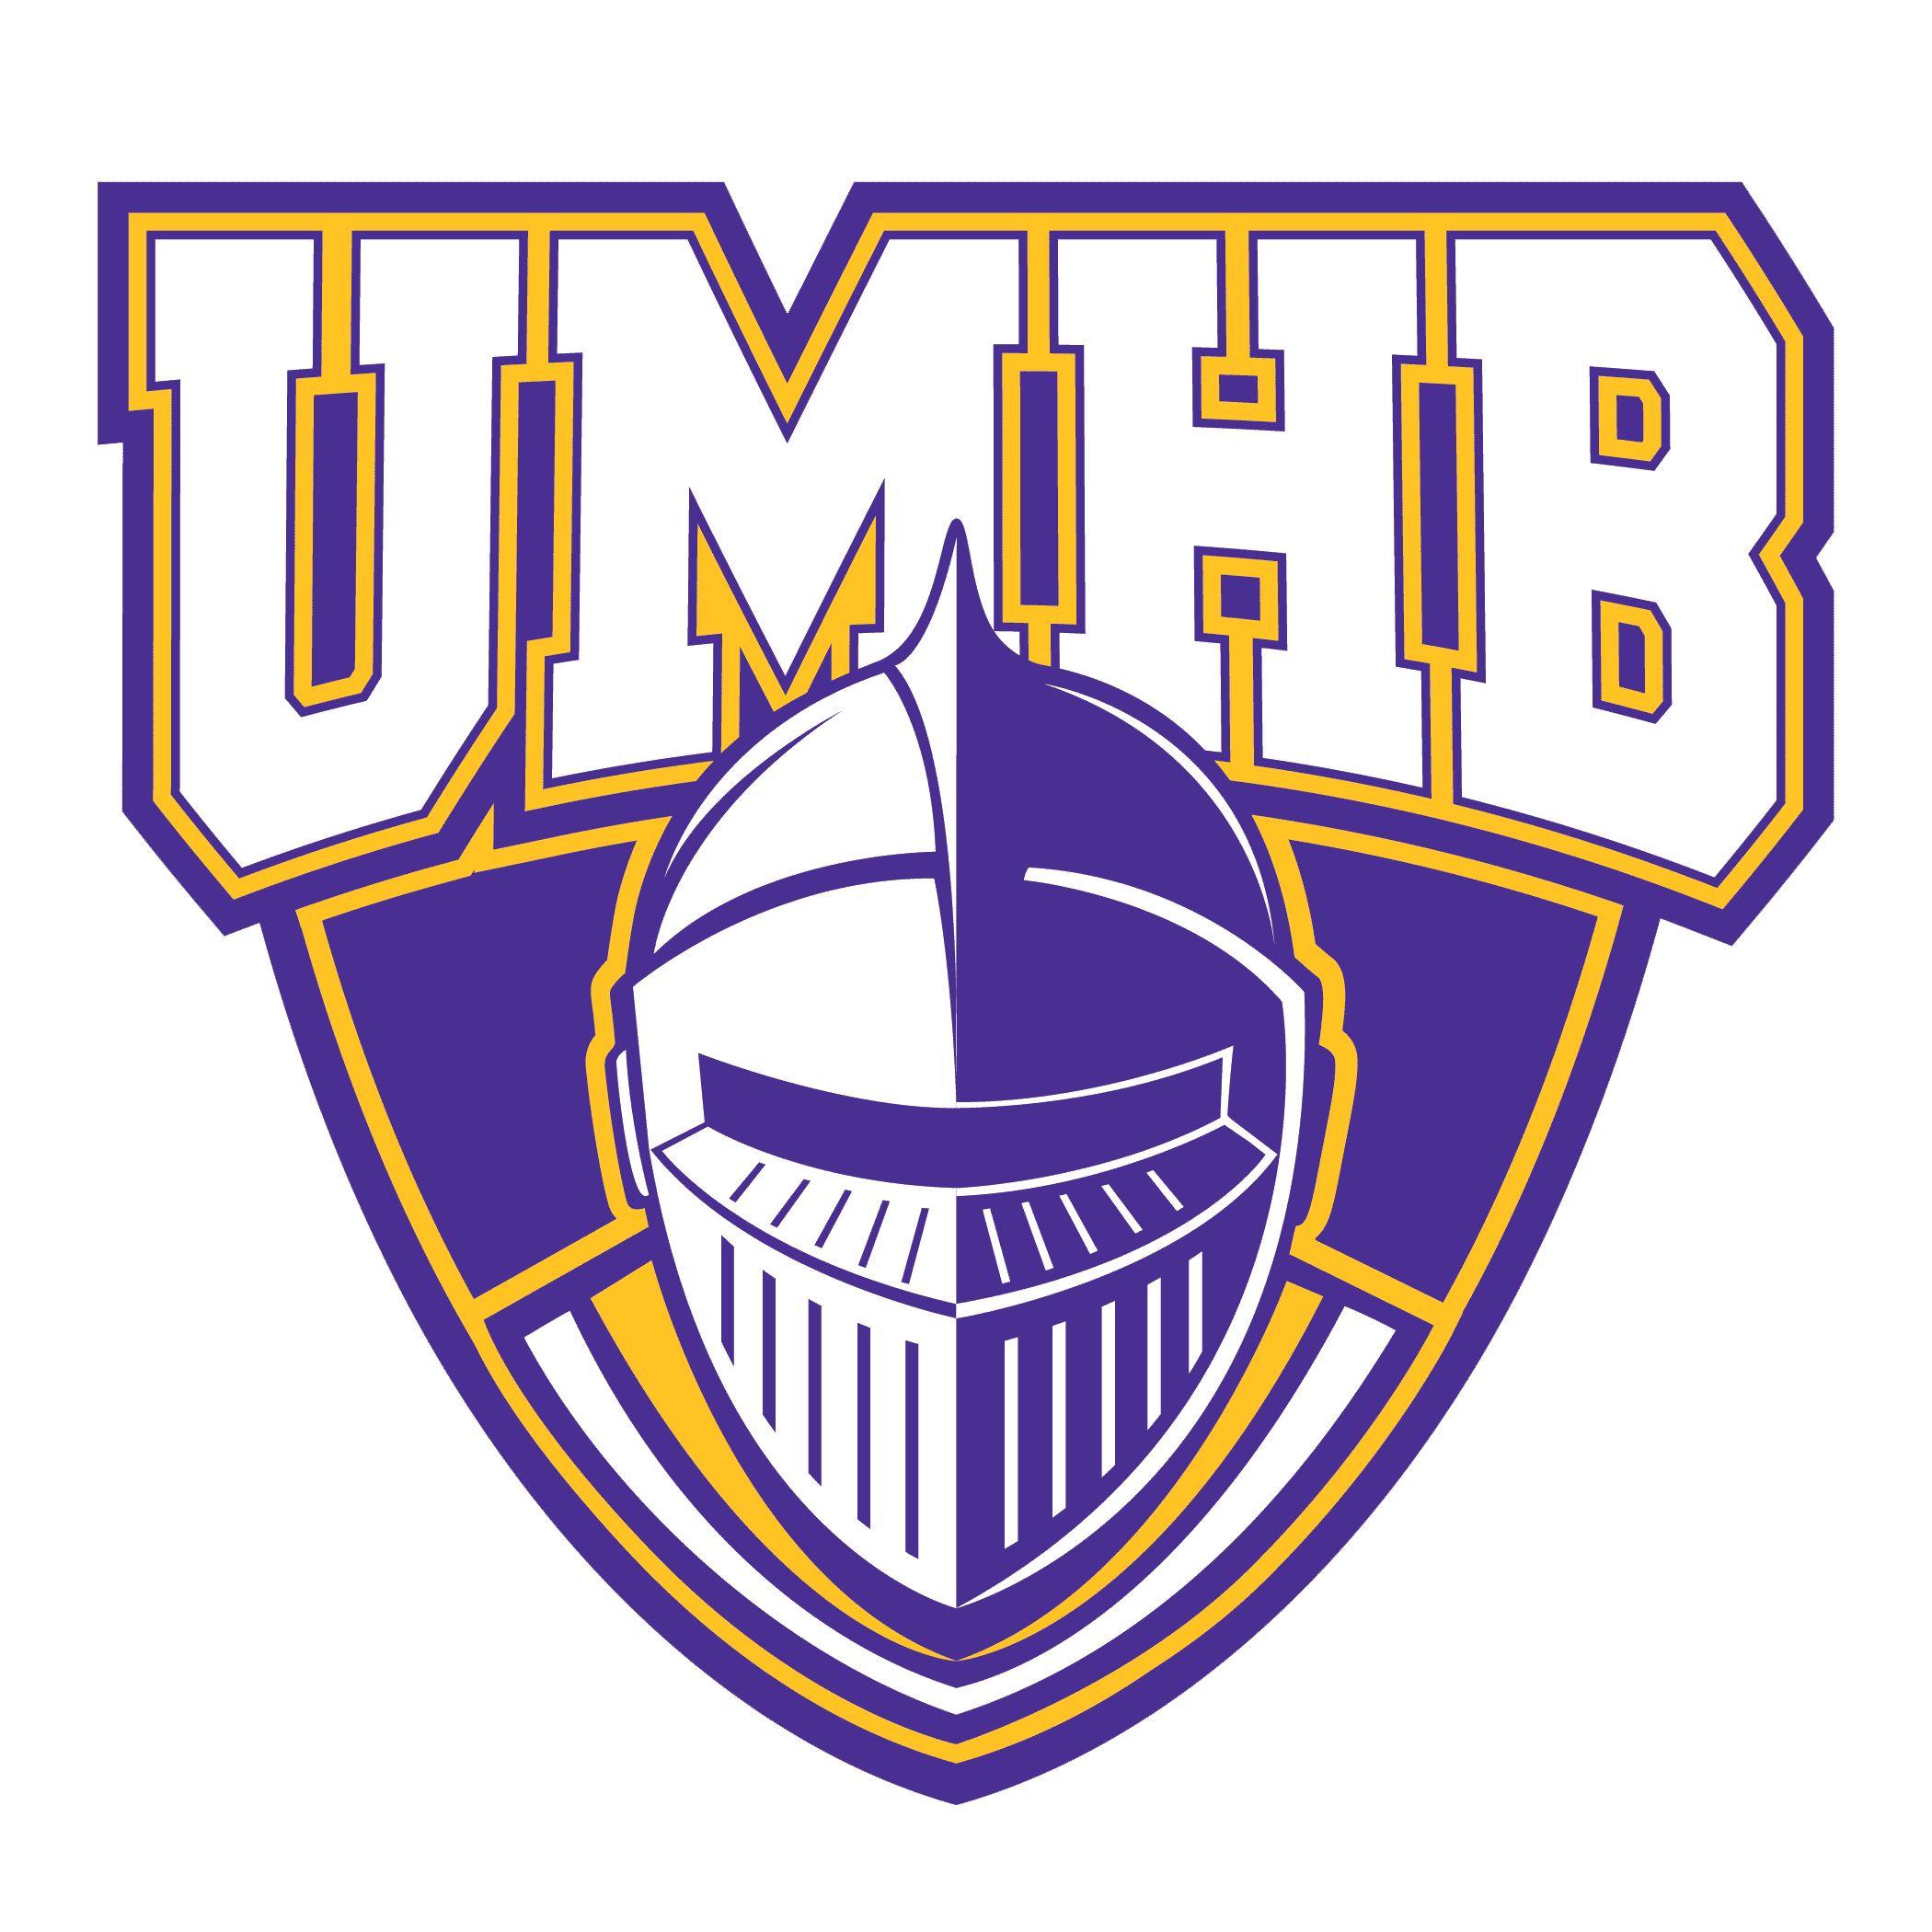 UMHB Logo